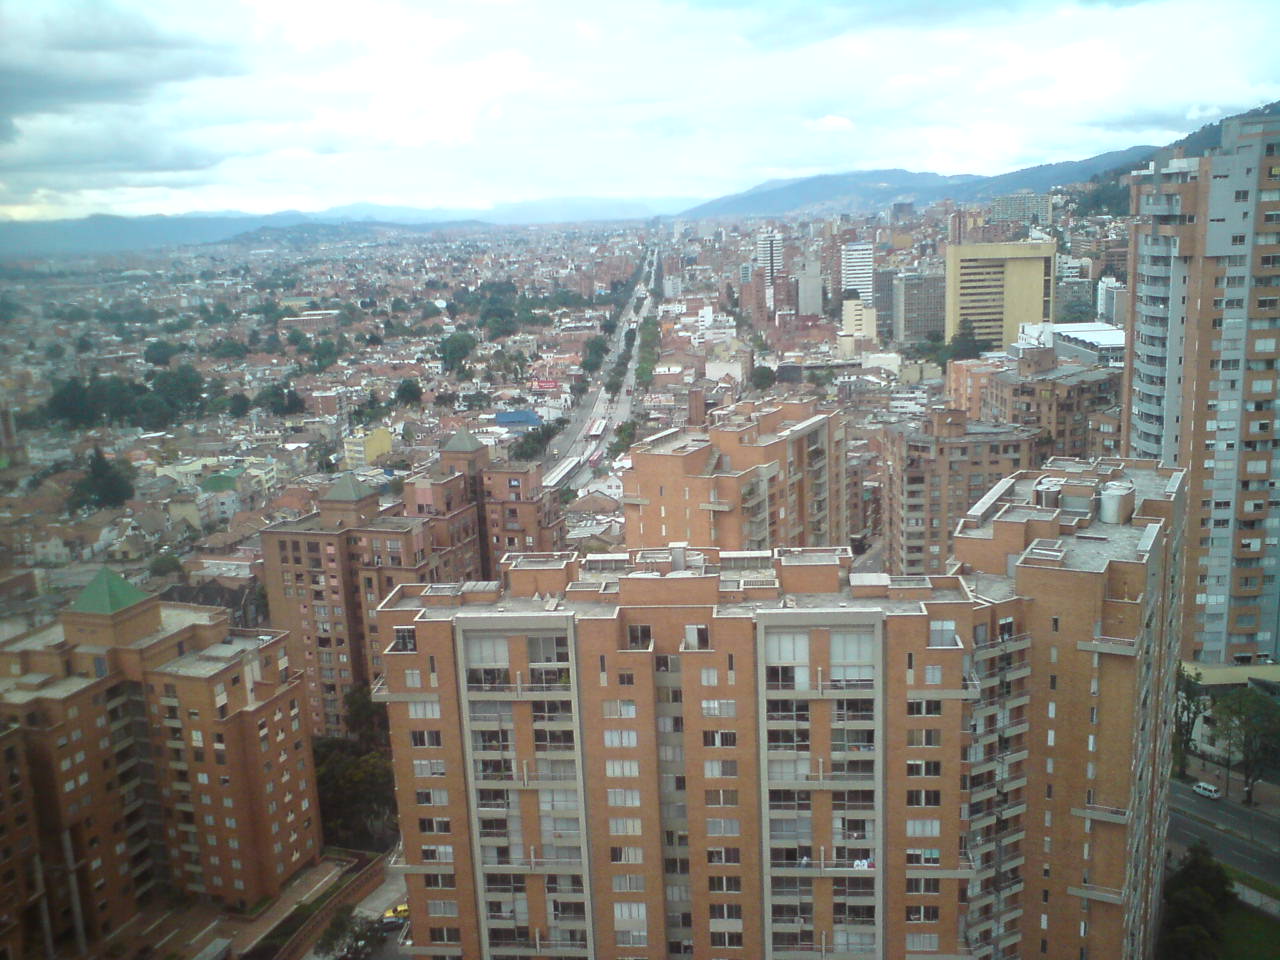 Foto: Norte de Bogota desde el edificio de Colseguros. - Bogotá (Bogota D.C.), Colombia